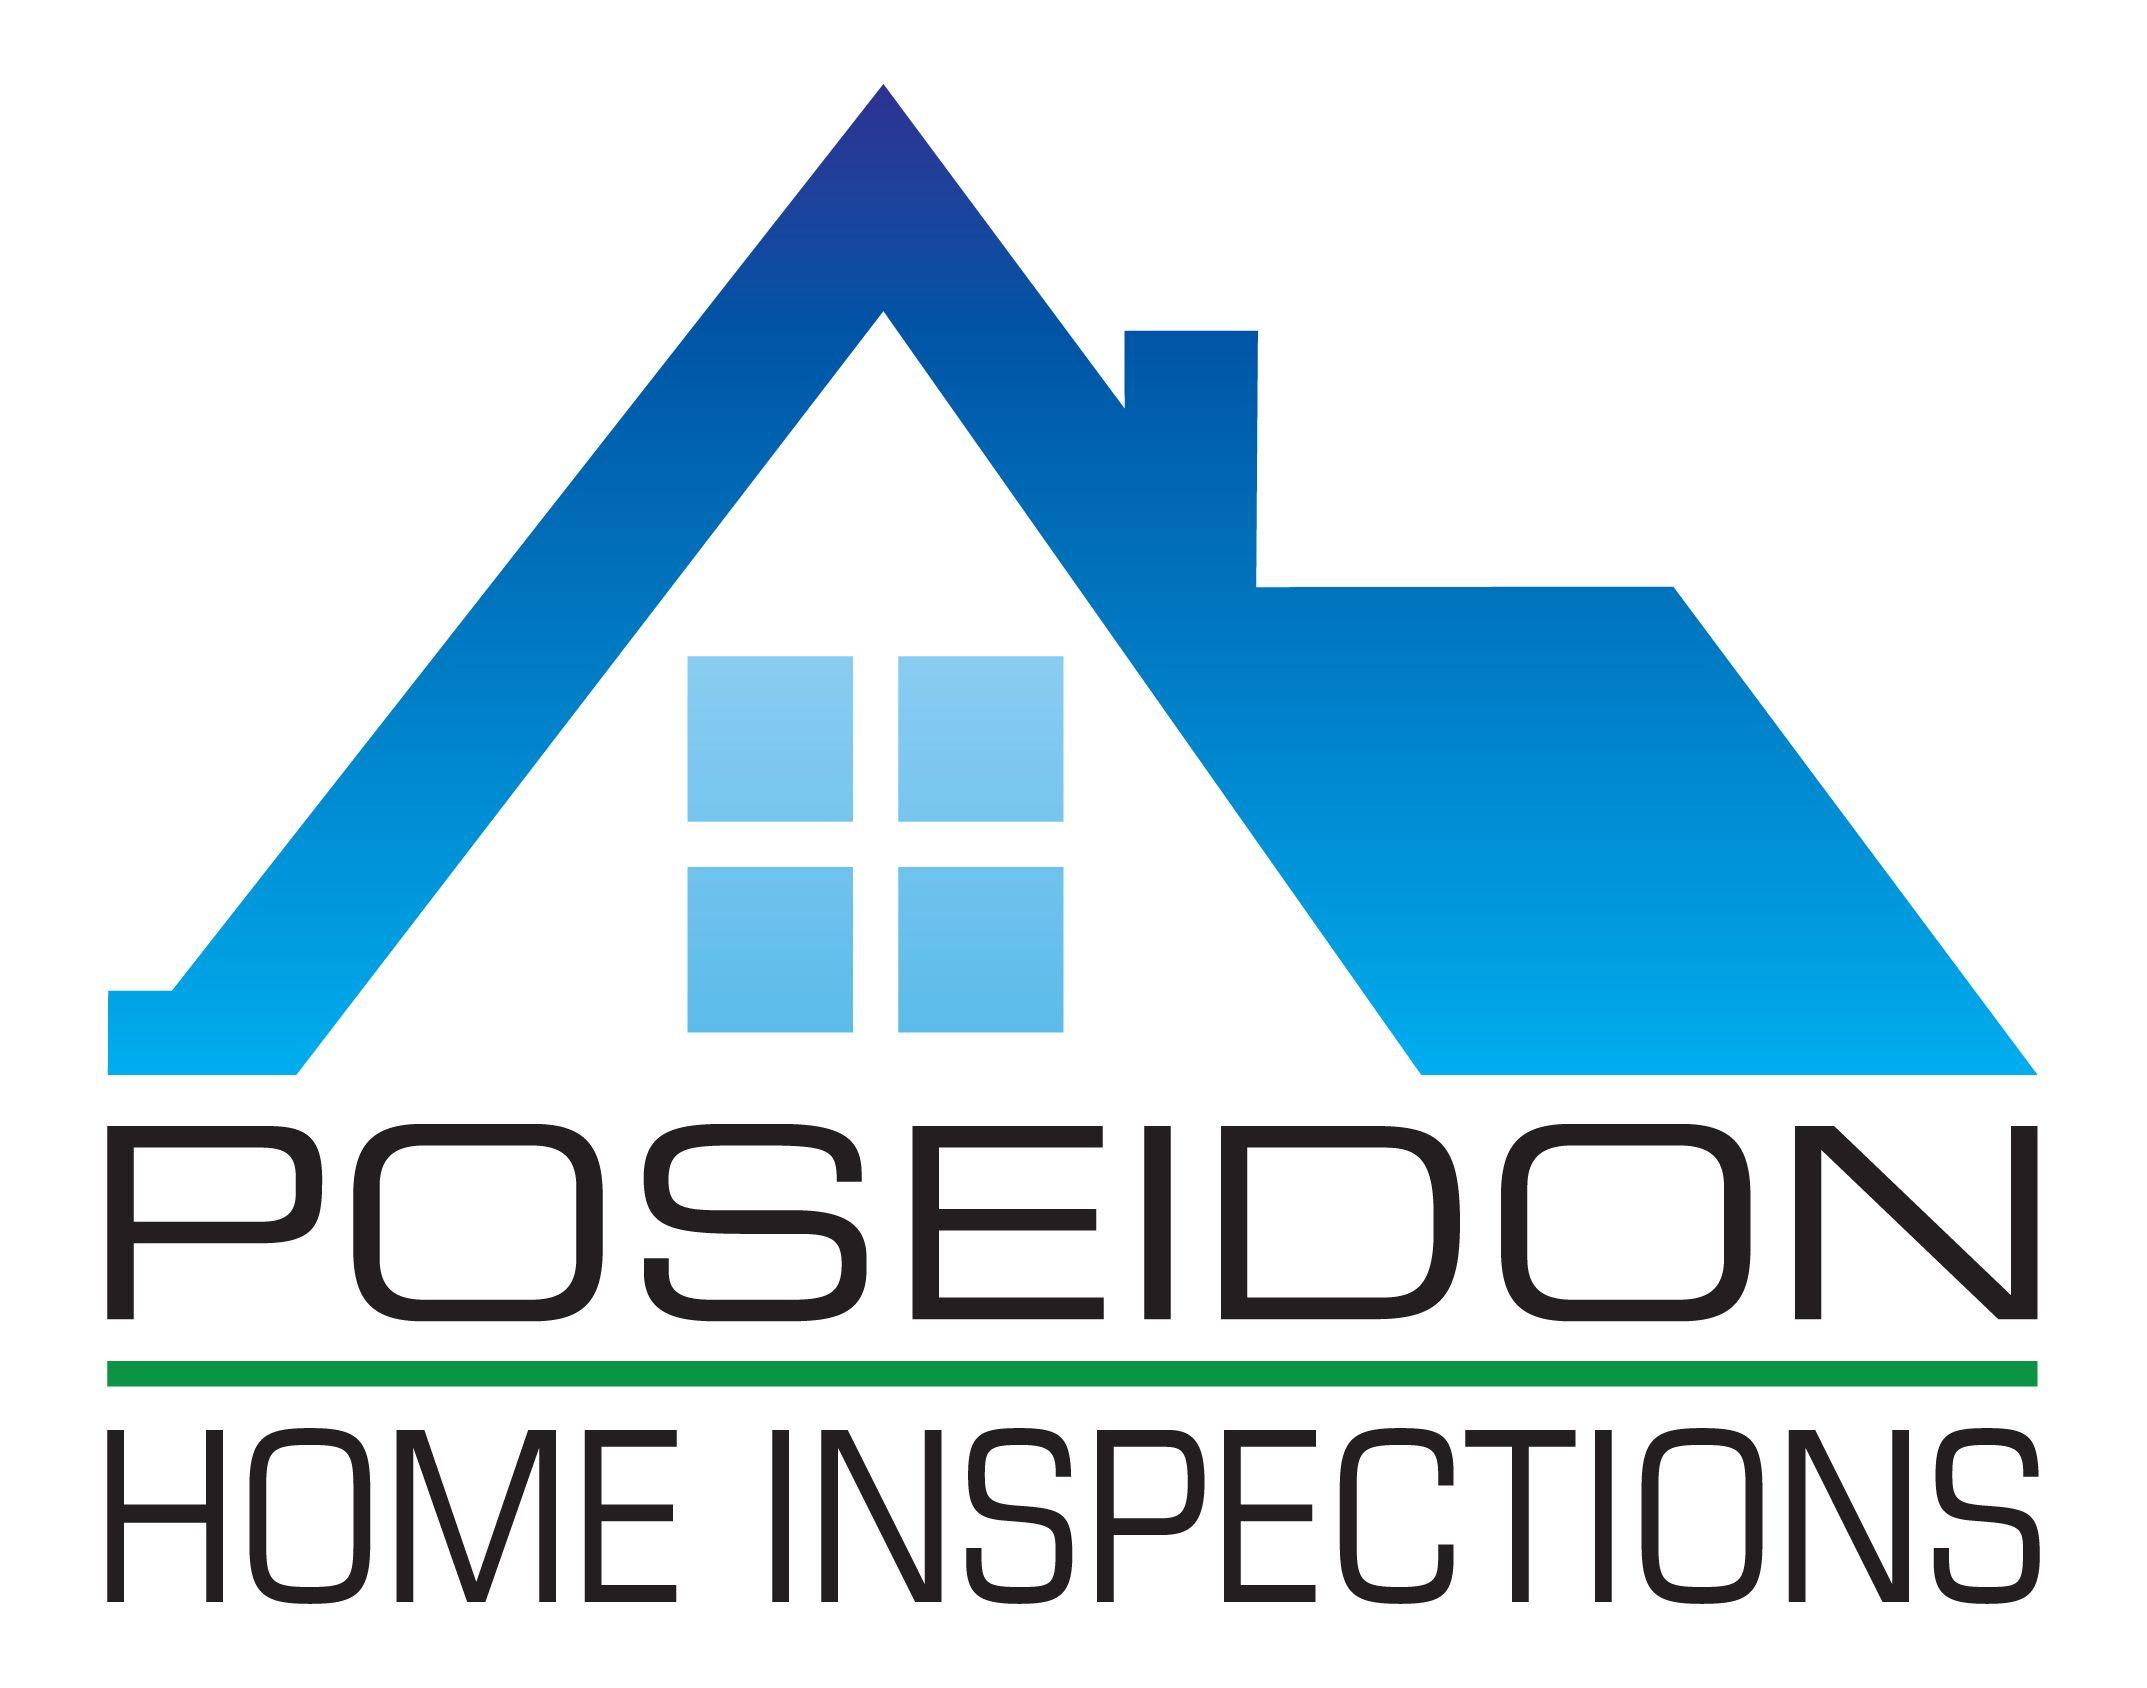 House Window Logo - Poseidon Home Inspections : Home